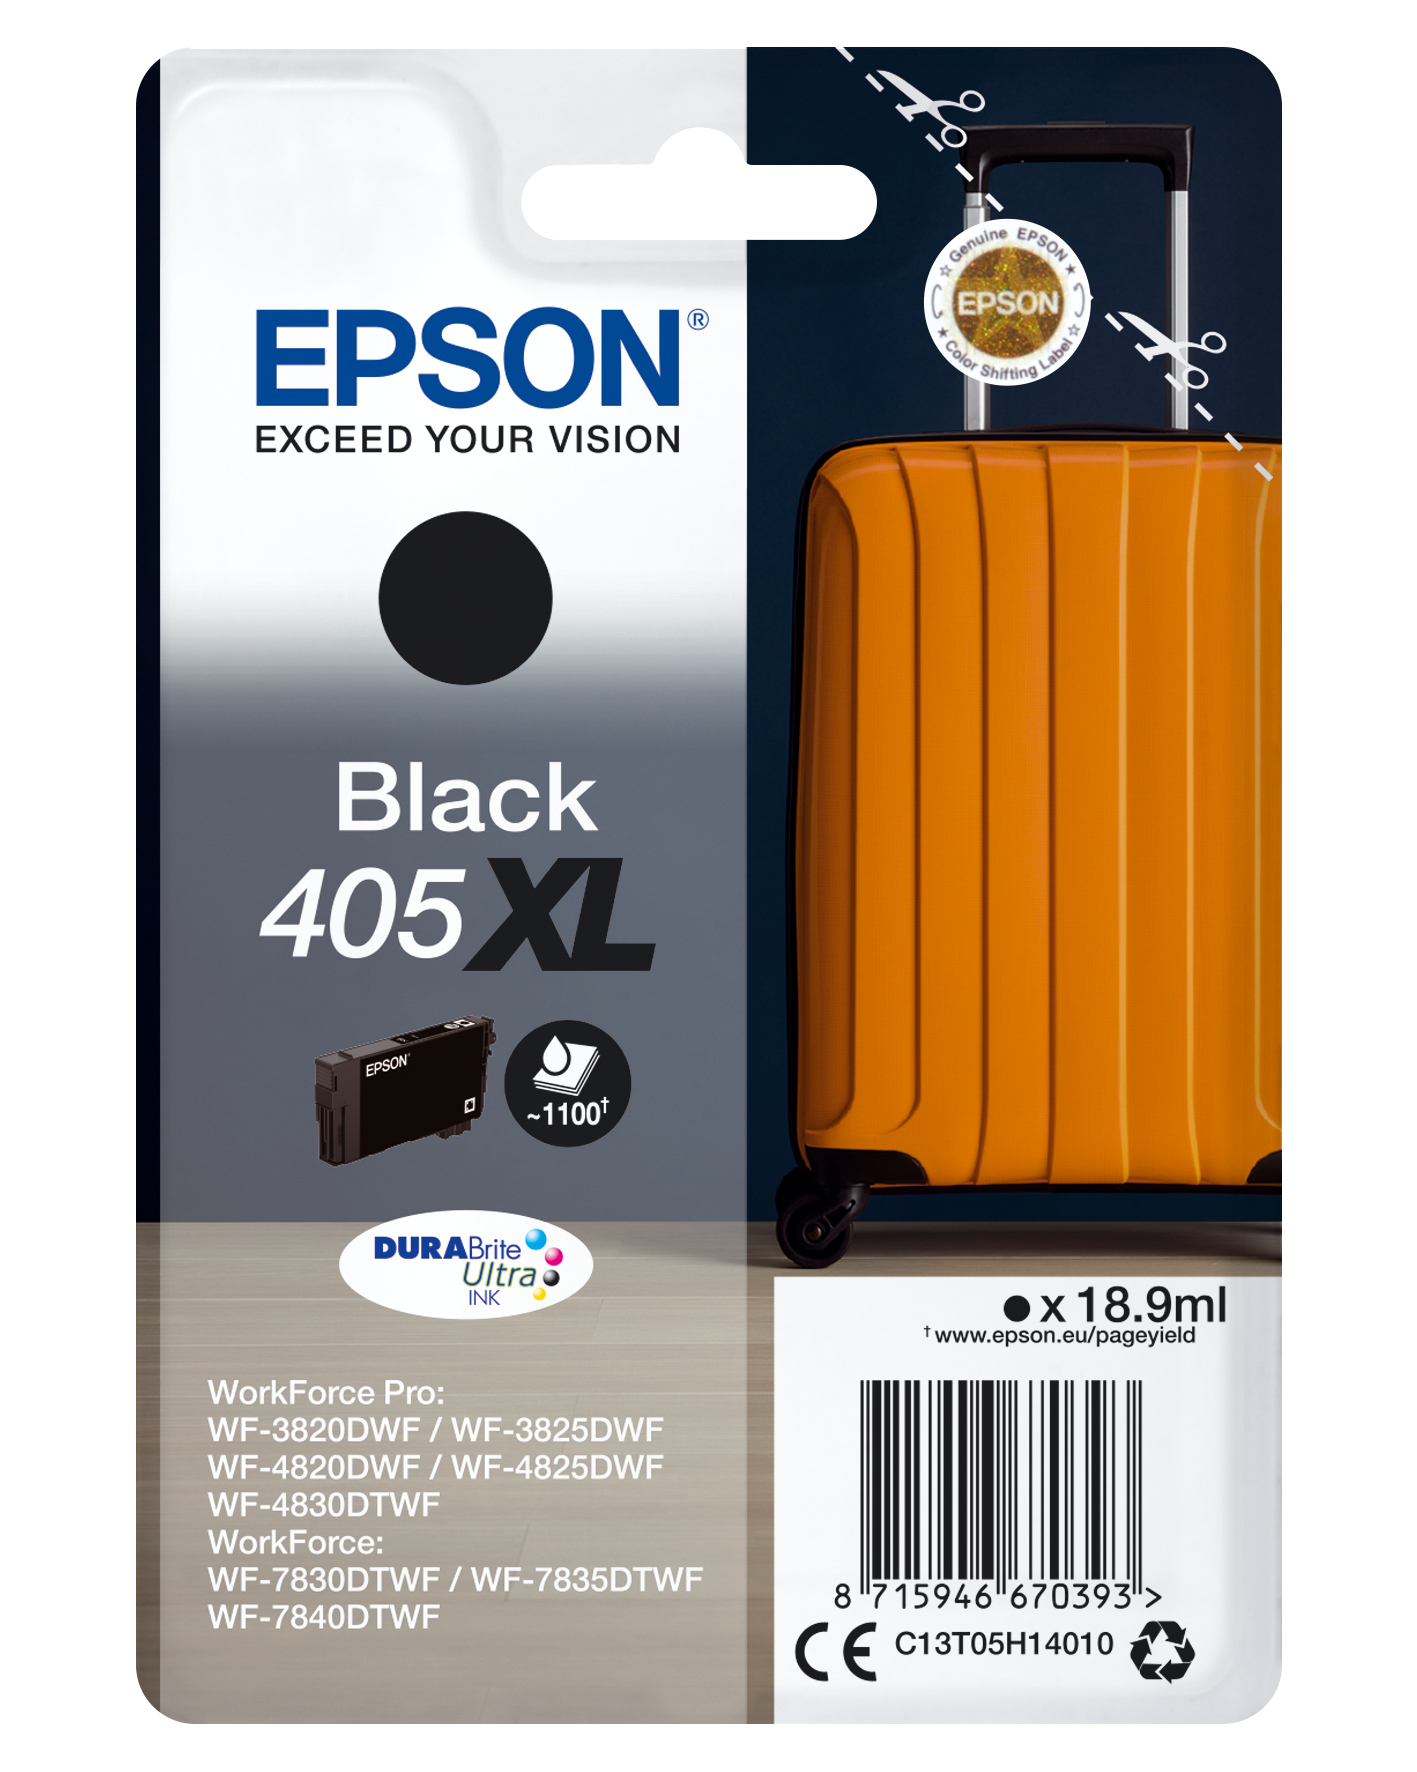 Epson Singlepack Black 405XL DURABrite Ultra Ink - Hohe (XL-) Ausbeute - Tinte auf Pigmentbasis - 18,9 ml - 1 Stück(e) - Einzelpackung